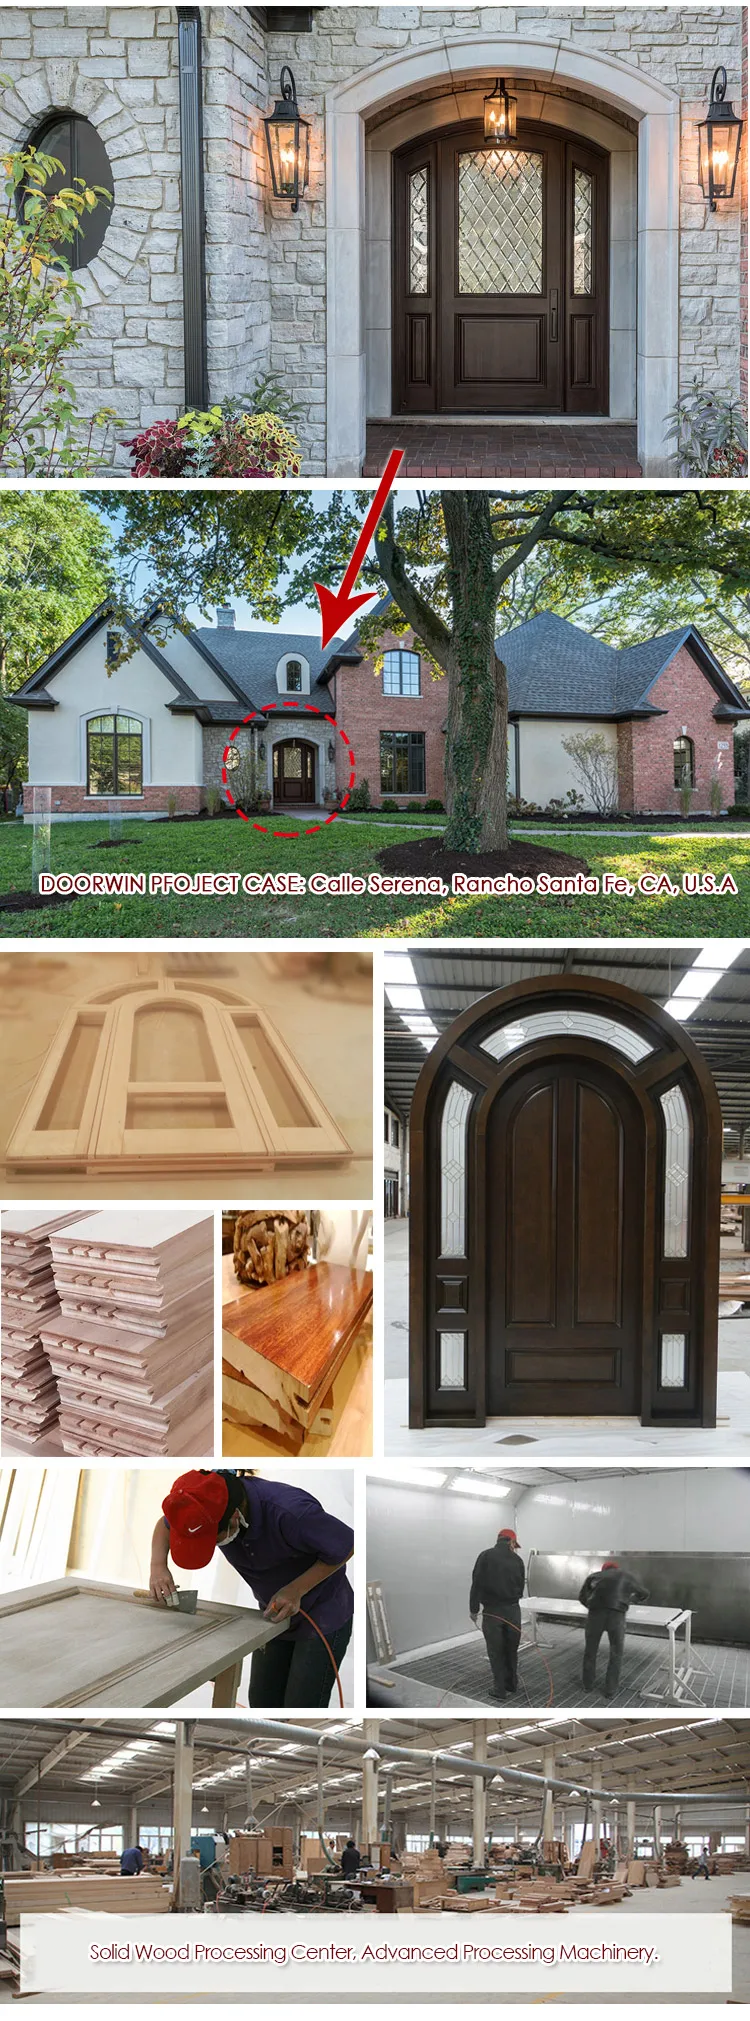 Factory direct timber door and window frames teak interior doors standard width us